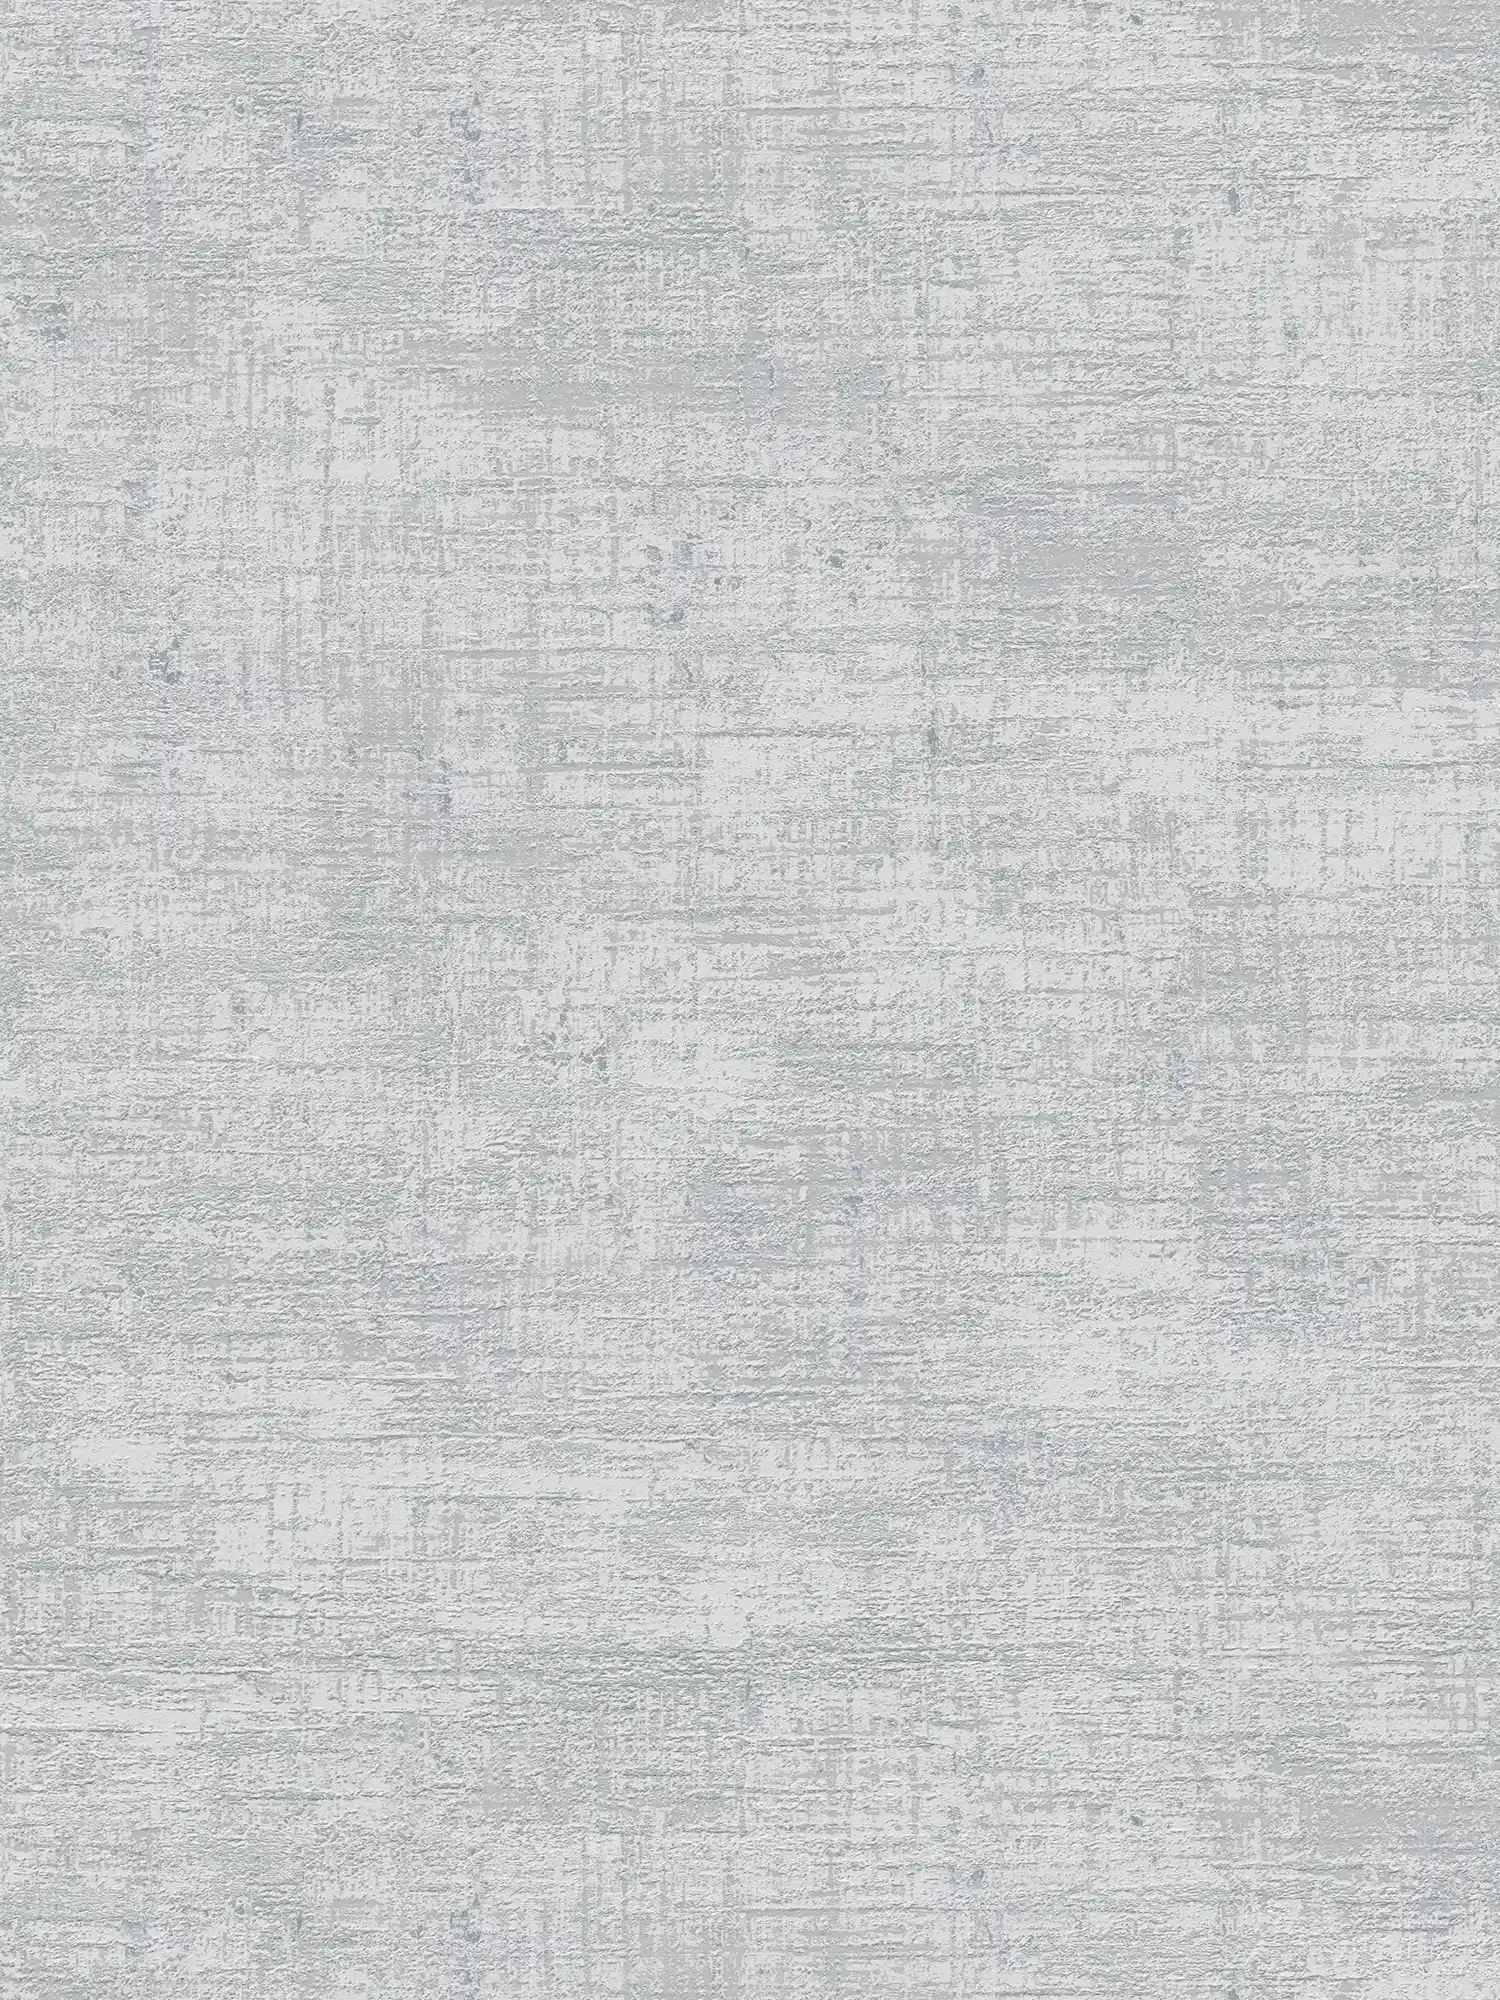 Vliestapete mit metallischen Akzenten – Grau, Silber
